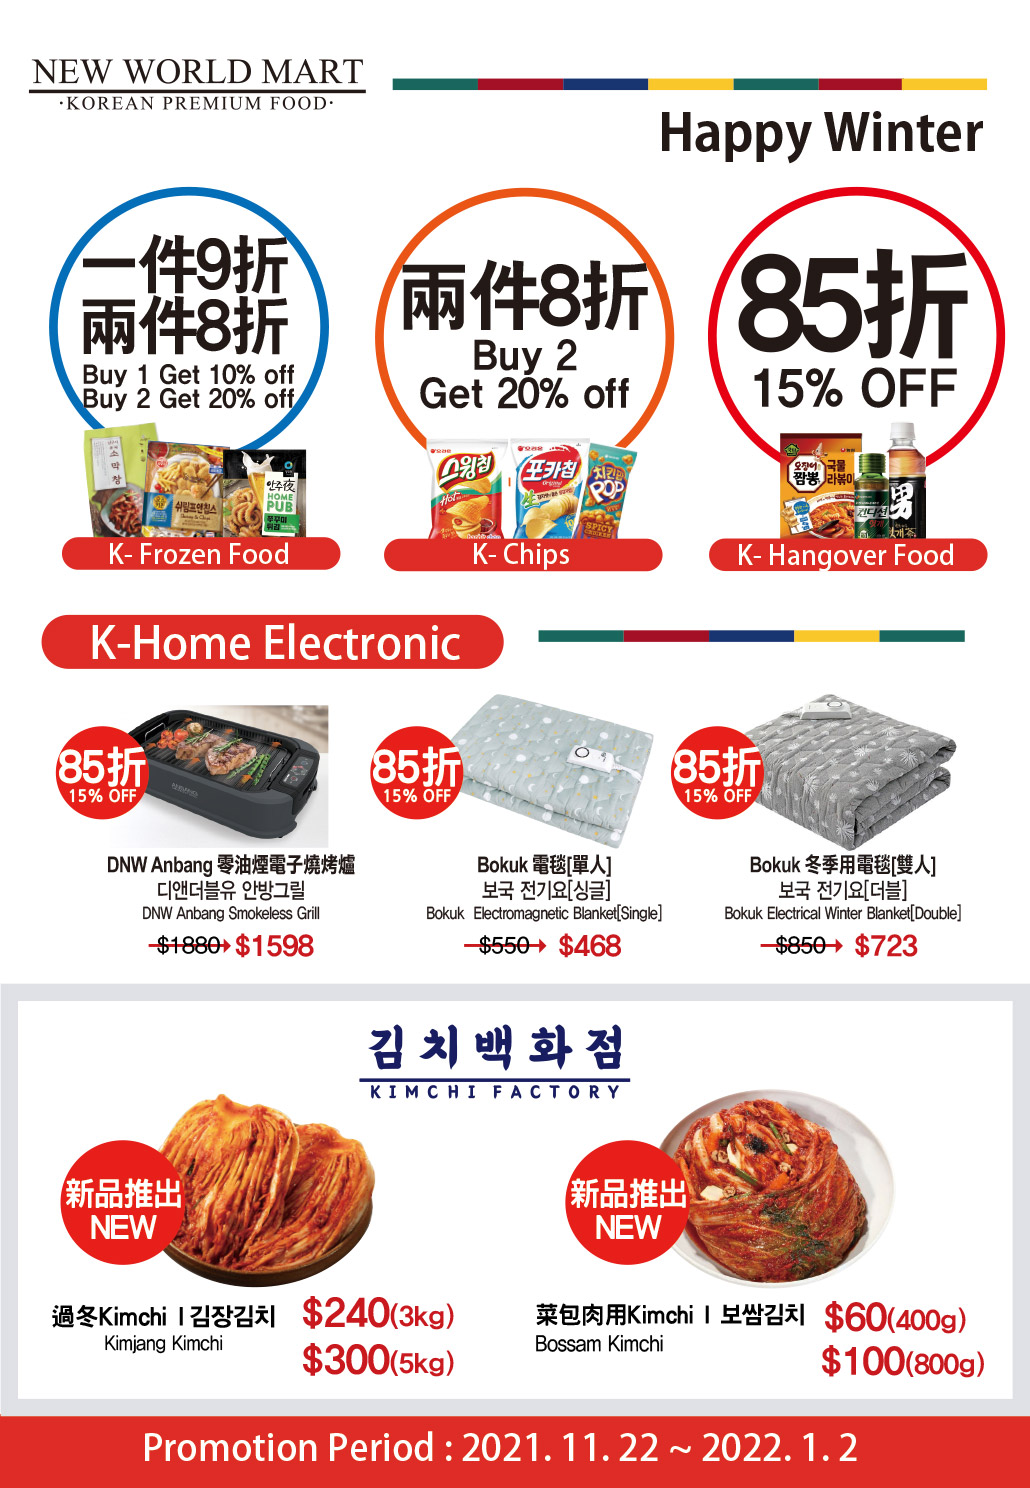 韓國食品-North Point Shop 6,000sqf Expansion!